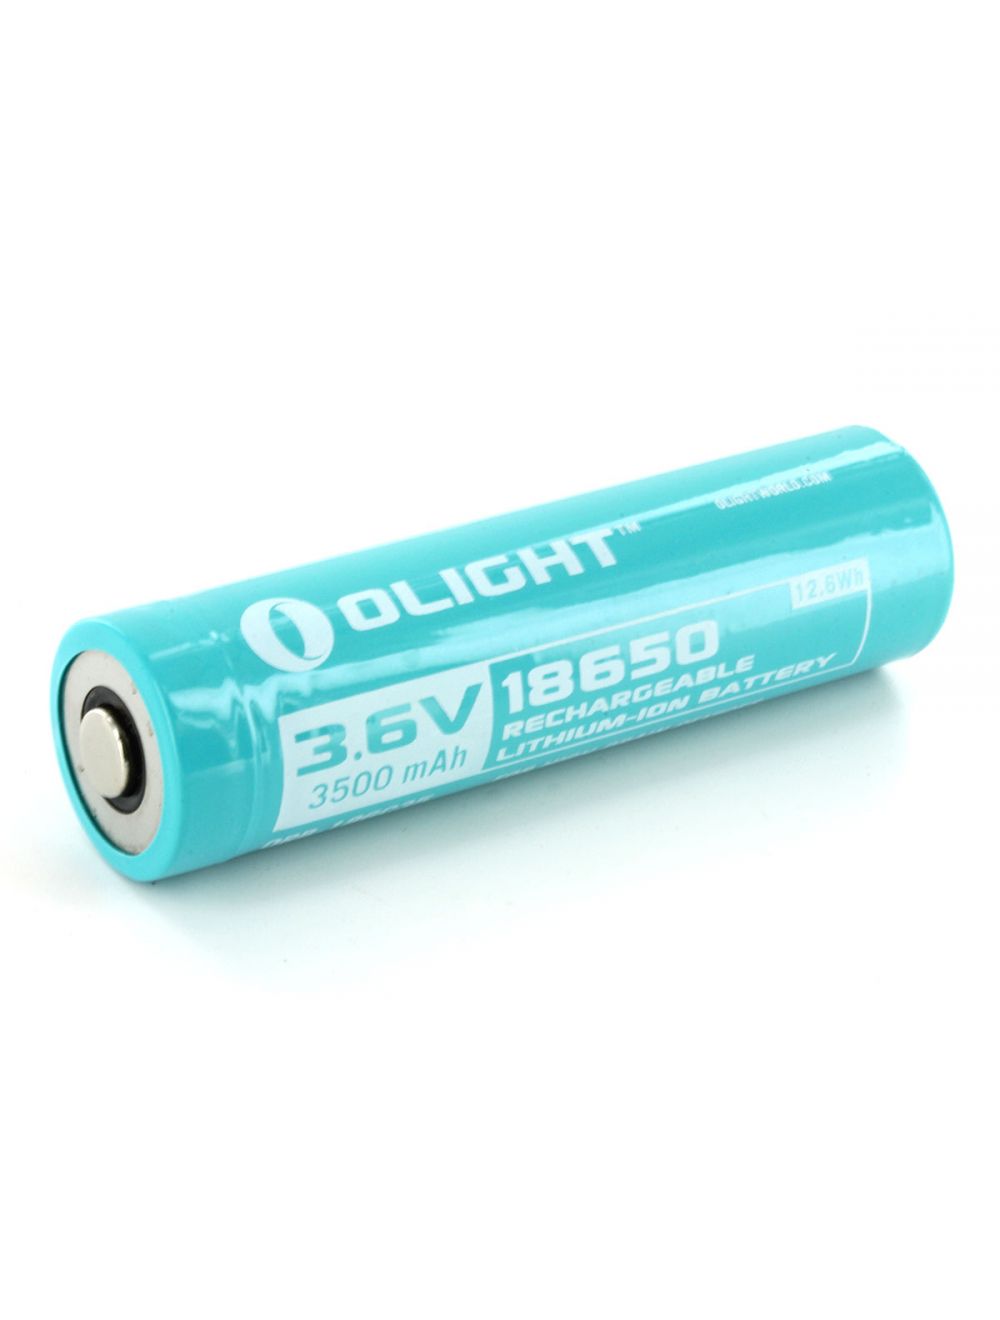 Productief Overleven Tips Olight Li-Ion batterij voor Olight S30RIII kopen? Zaklampen.nl